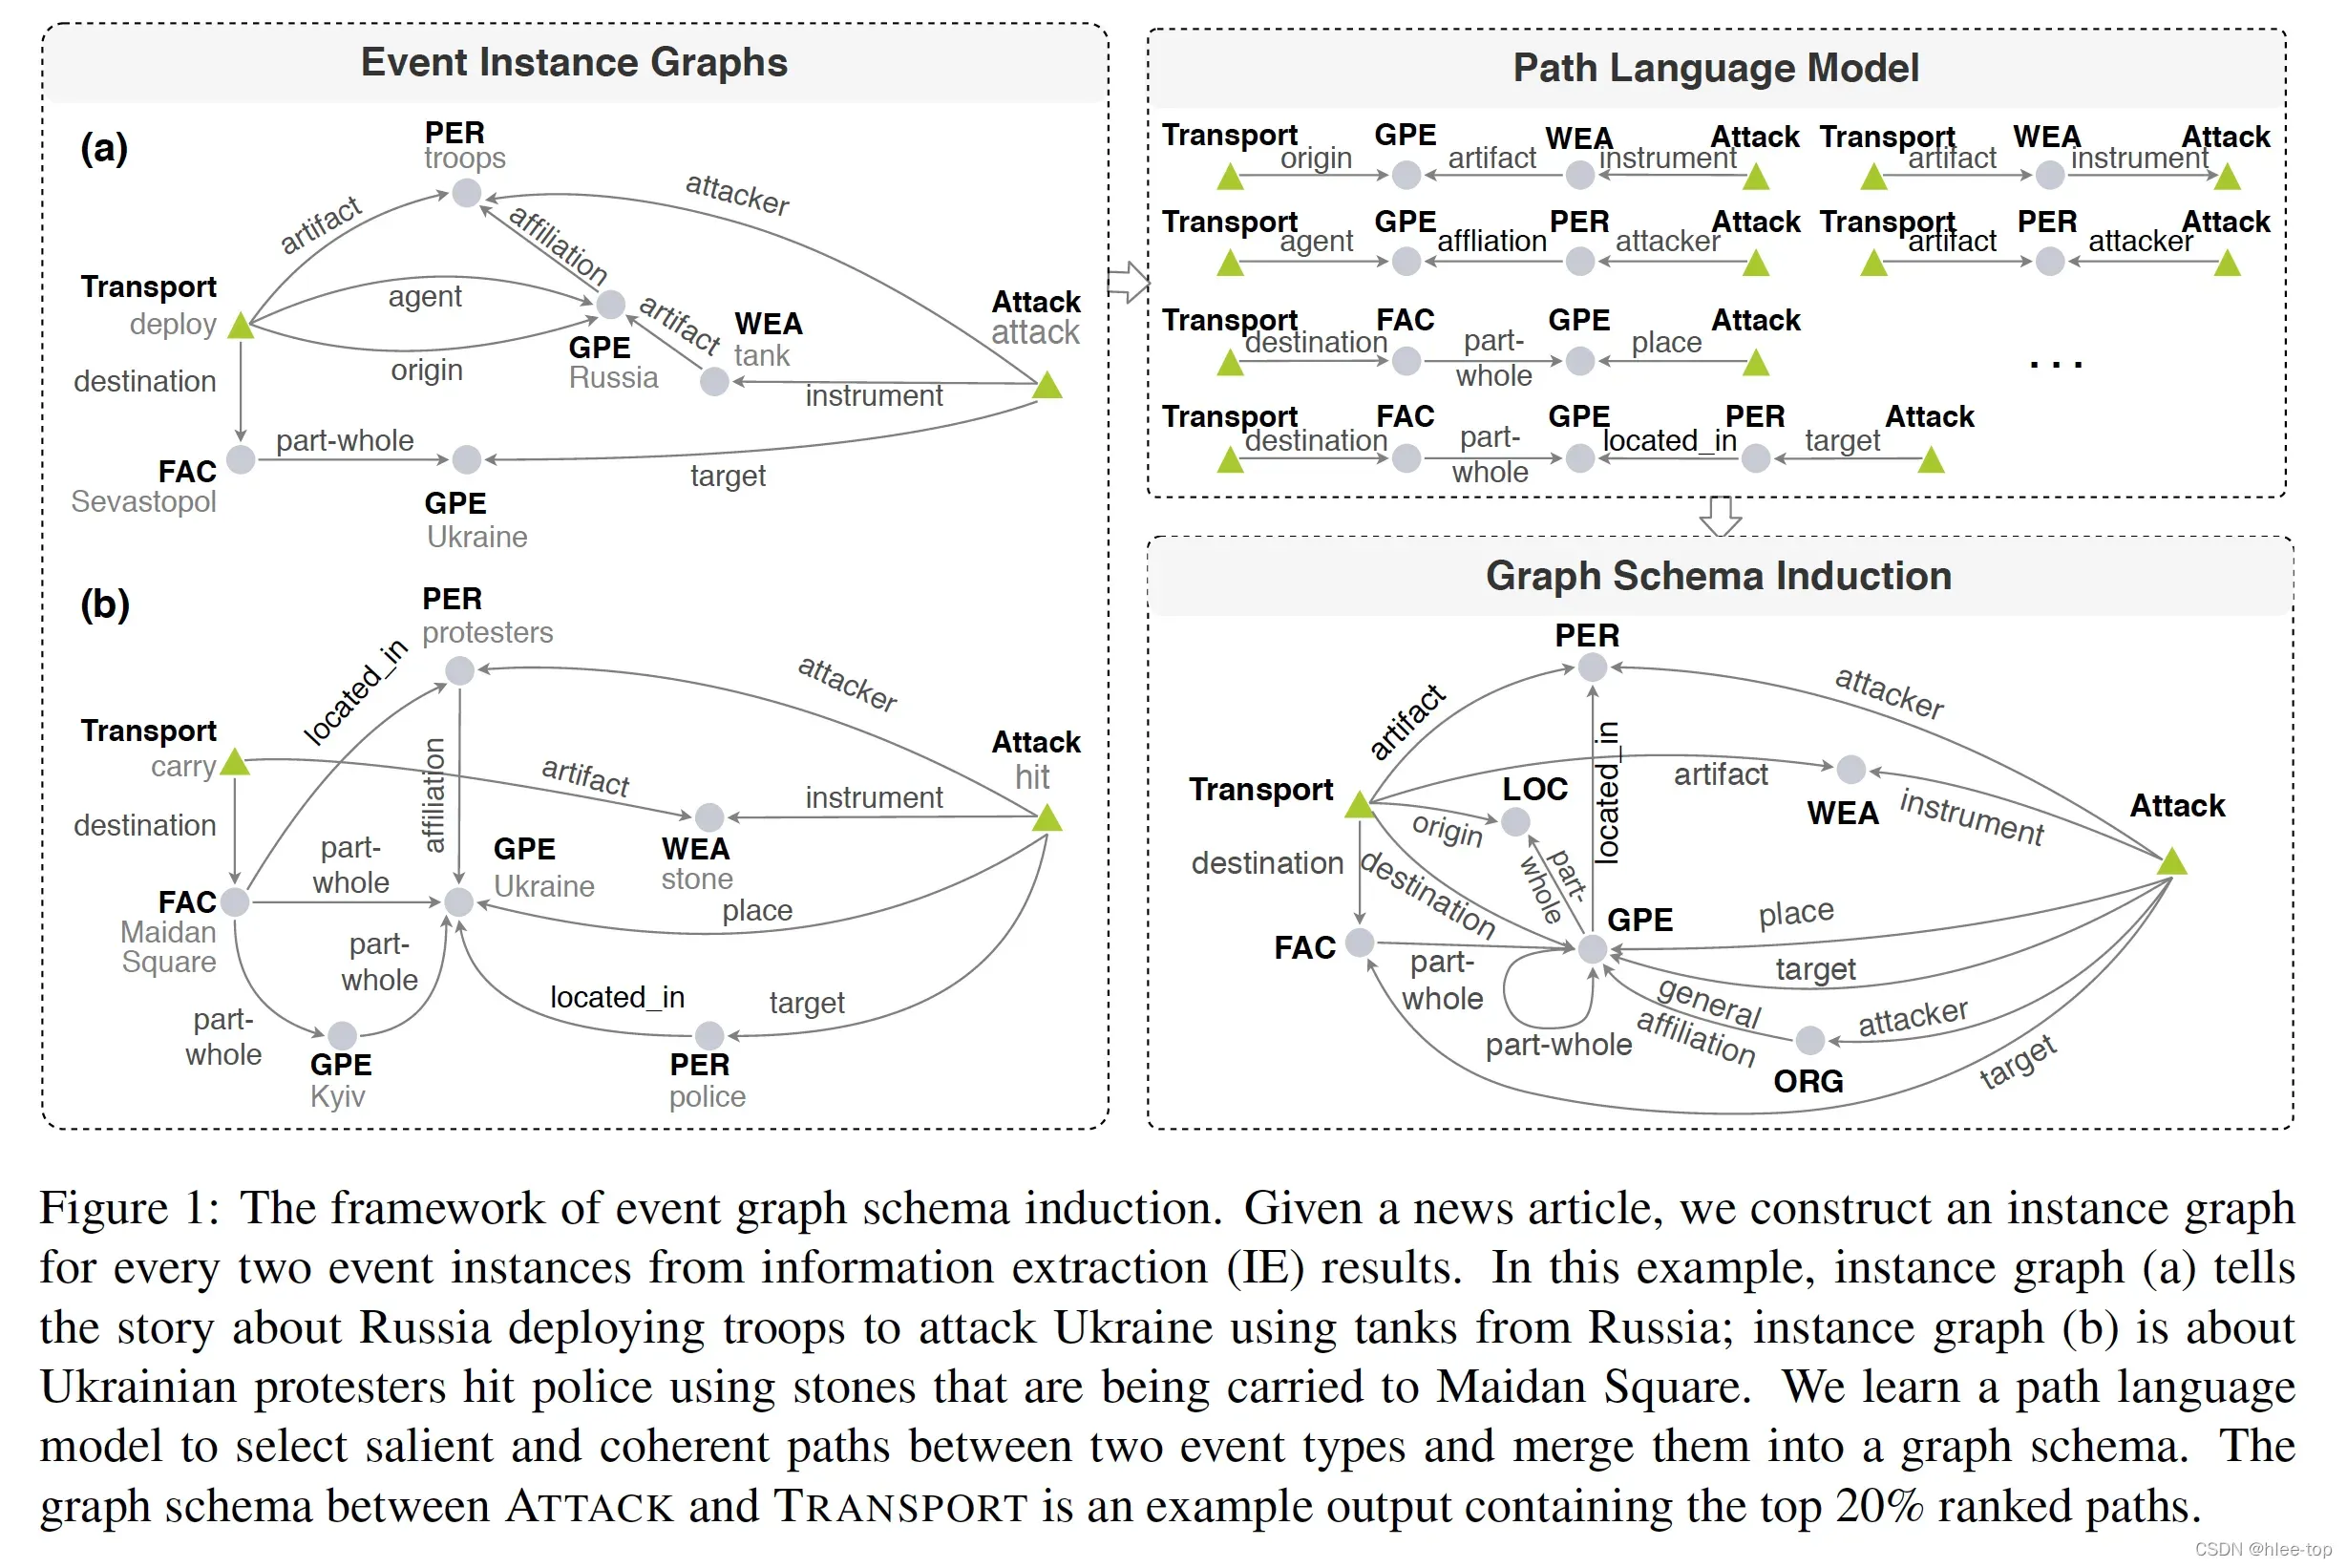 论文笔记 EMNLP 2020|Connecting the Dots: Event Graph Schema Induction with Path Language Modeling